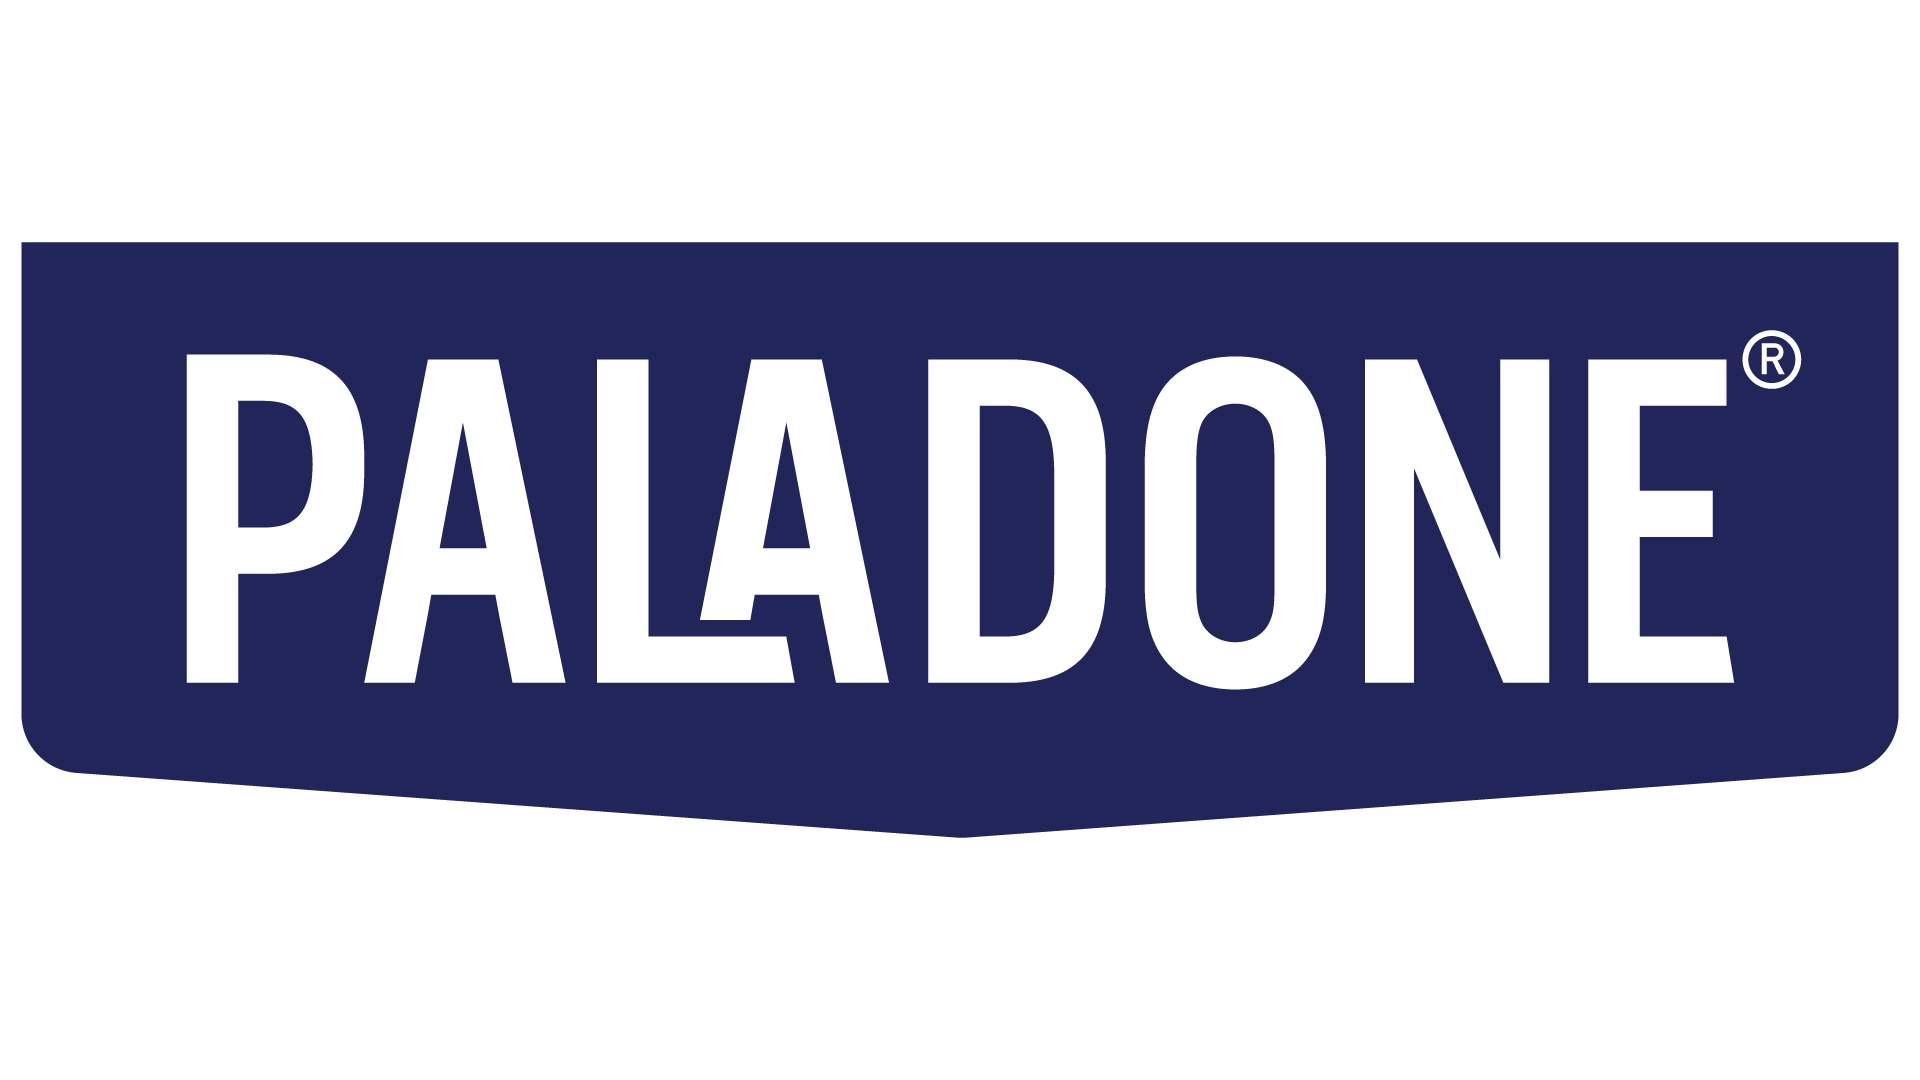 منتجات Paladone قادمة أخيراً إلى الوطن العربي ، متمثل في الخليج !